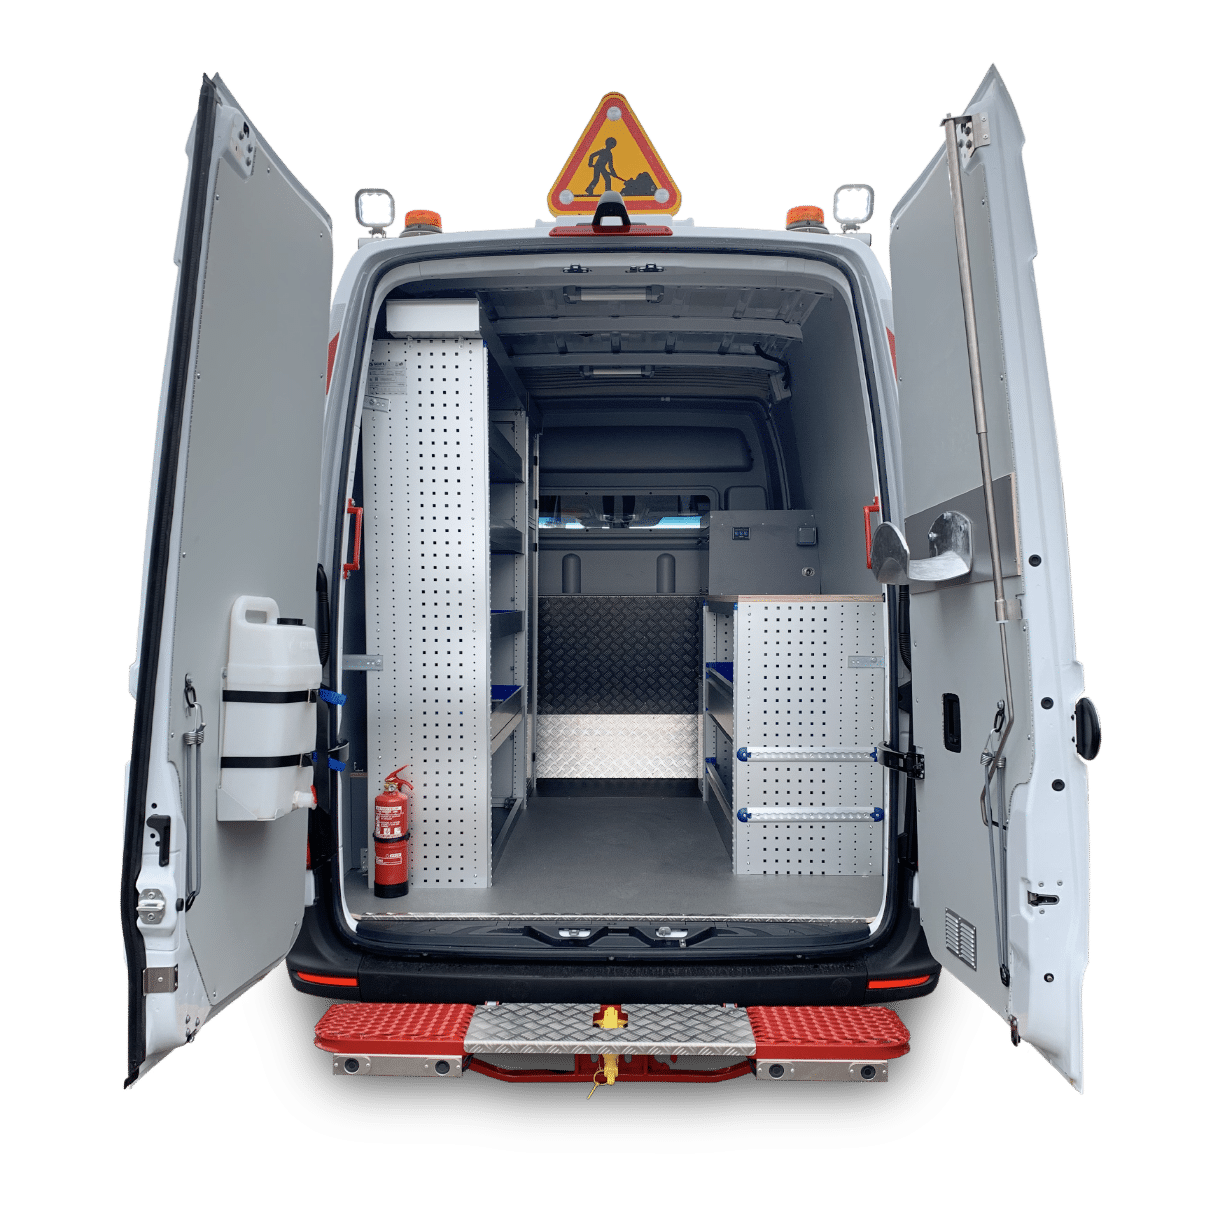 Rangements en aluminium pour véhicule utilitaire